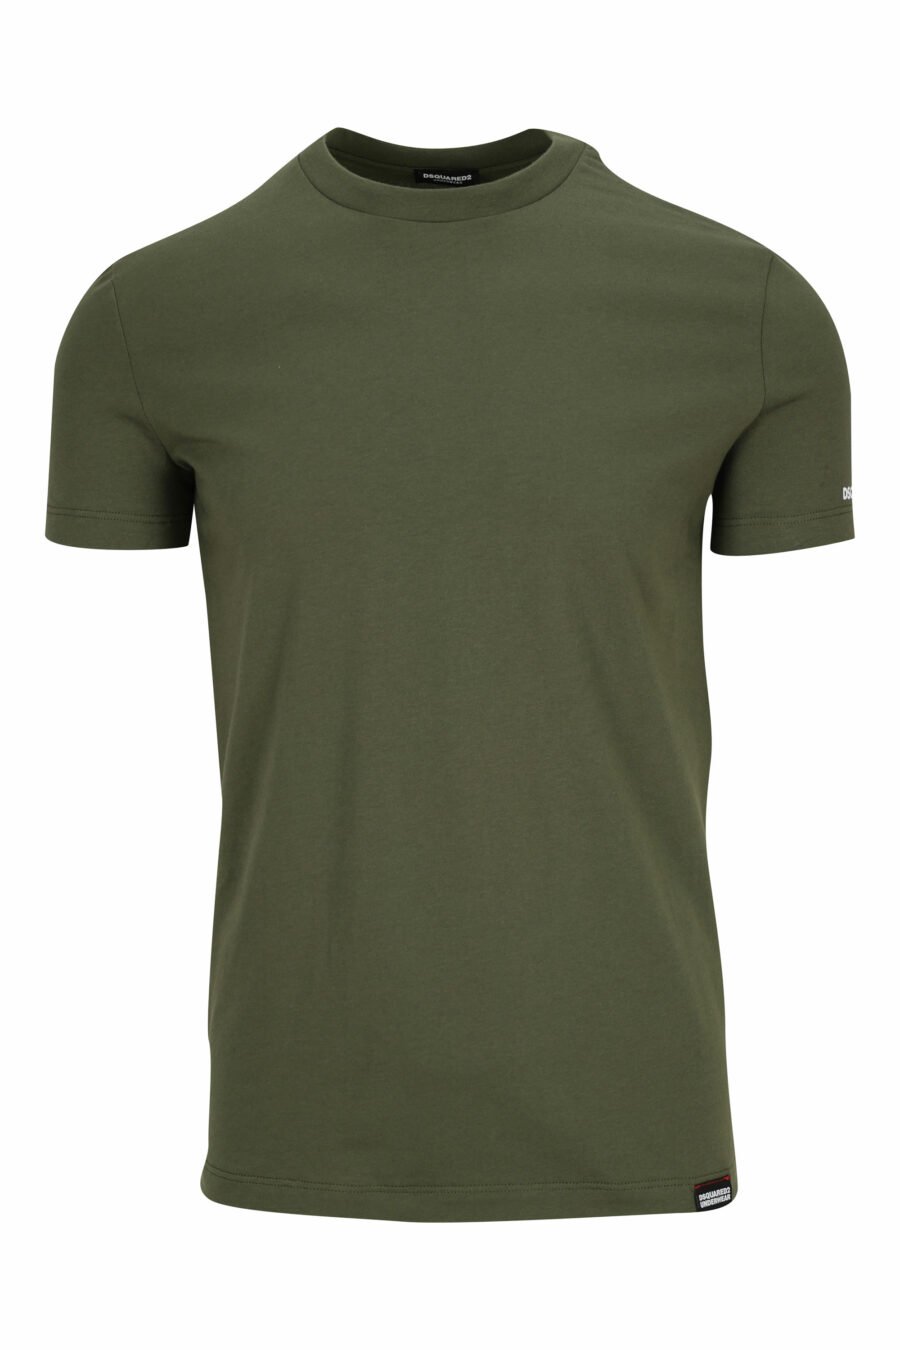 T-shirt verde militar com roupa interior branca minilogue - 8032674811622